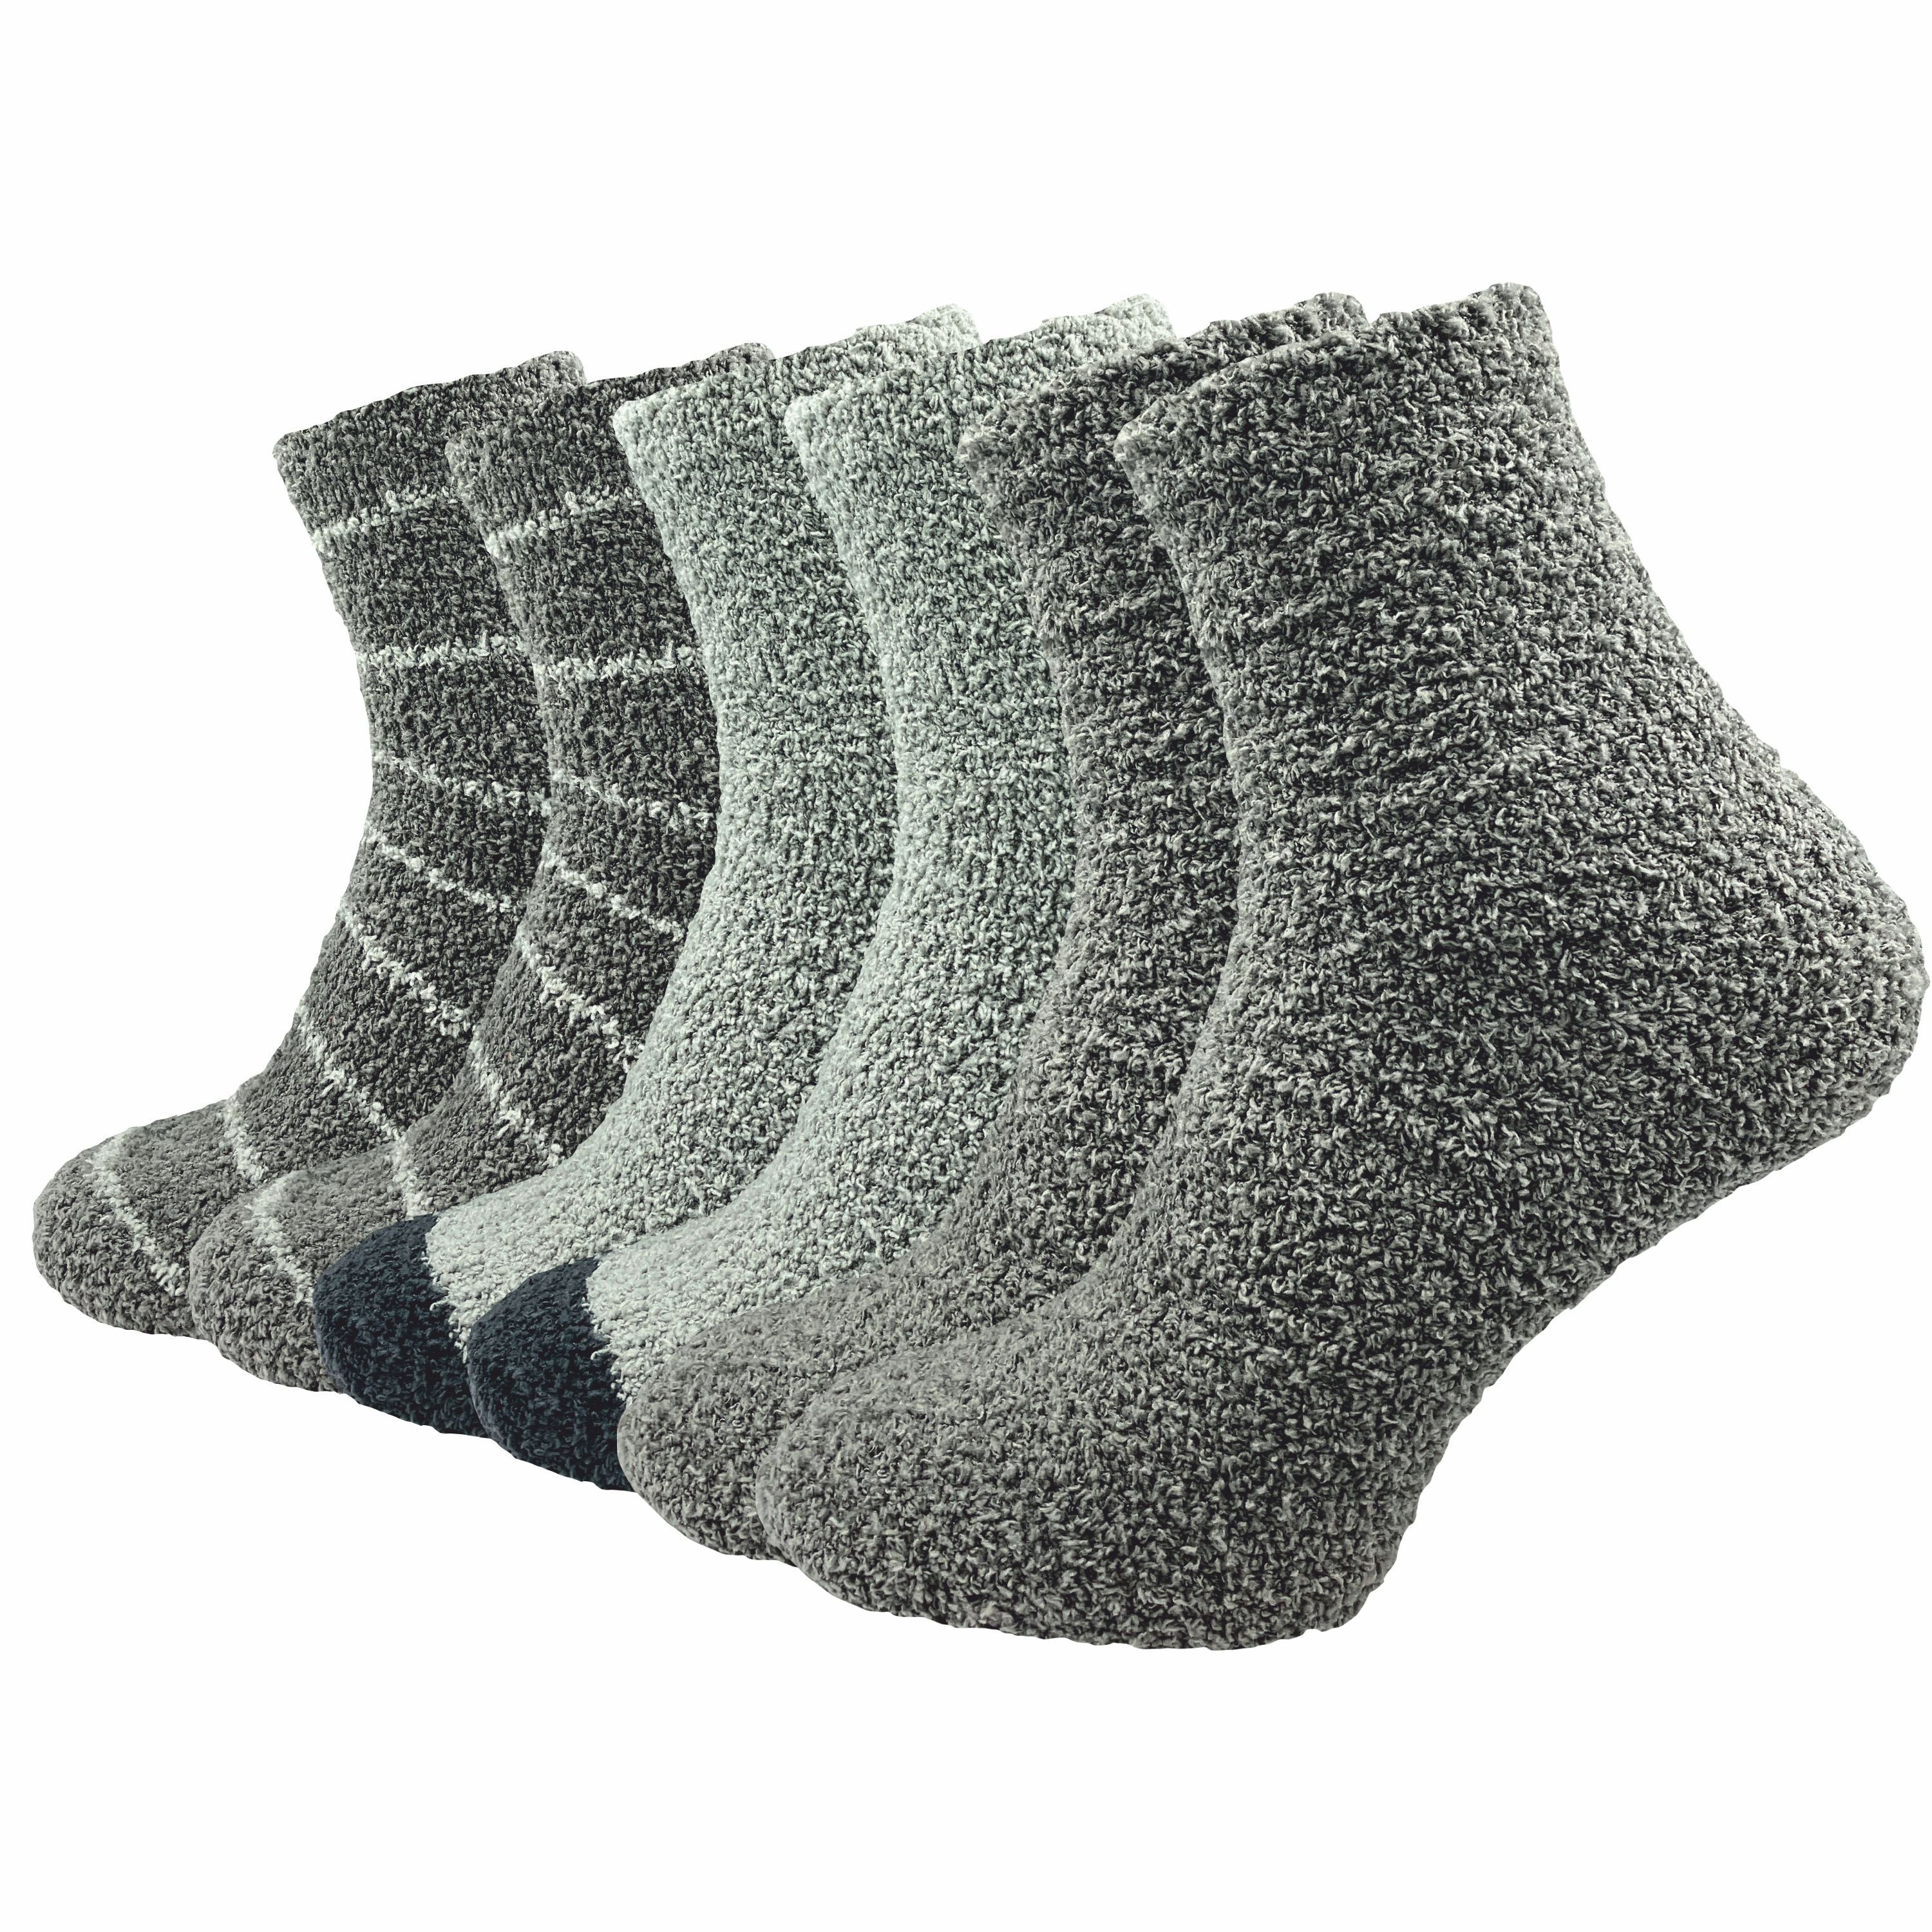 GAWILO Kuschelsocken für Damen für warme Füße an kalten Tagen - extra weich & flauschig (6 Paar) Haussocken aus flauschigem Material für optimalen Tragekomfort grau